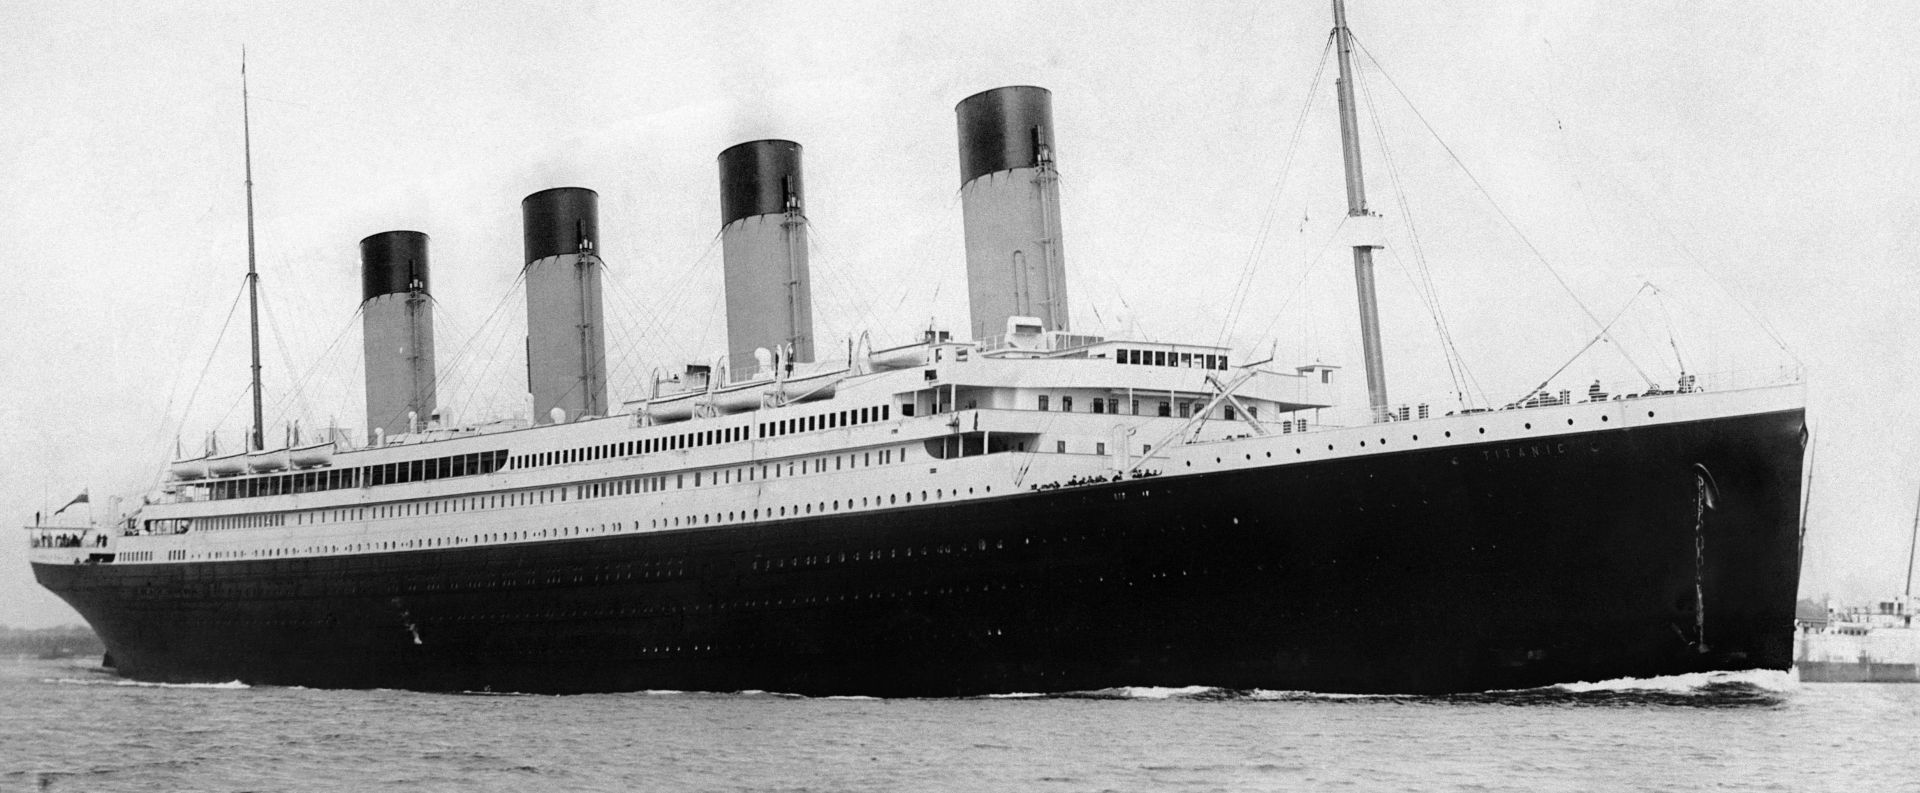 RMS Titanic leaves Southampton harbor on April 10, 1912.